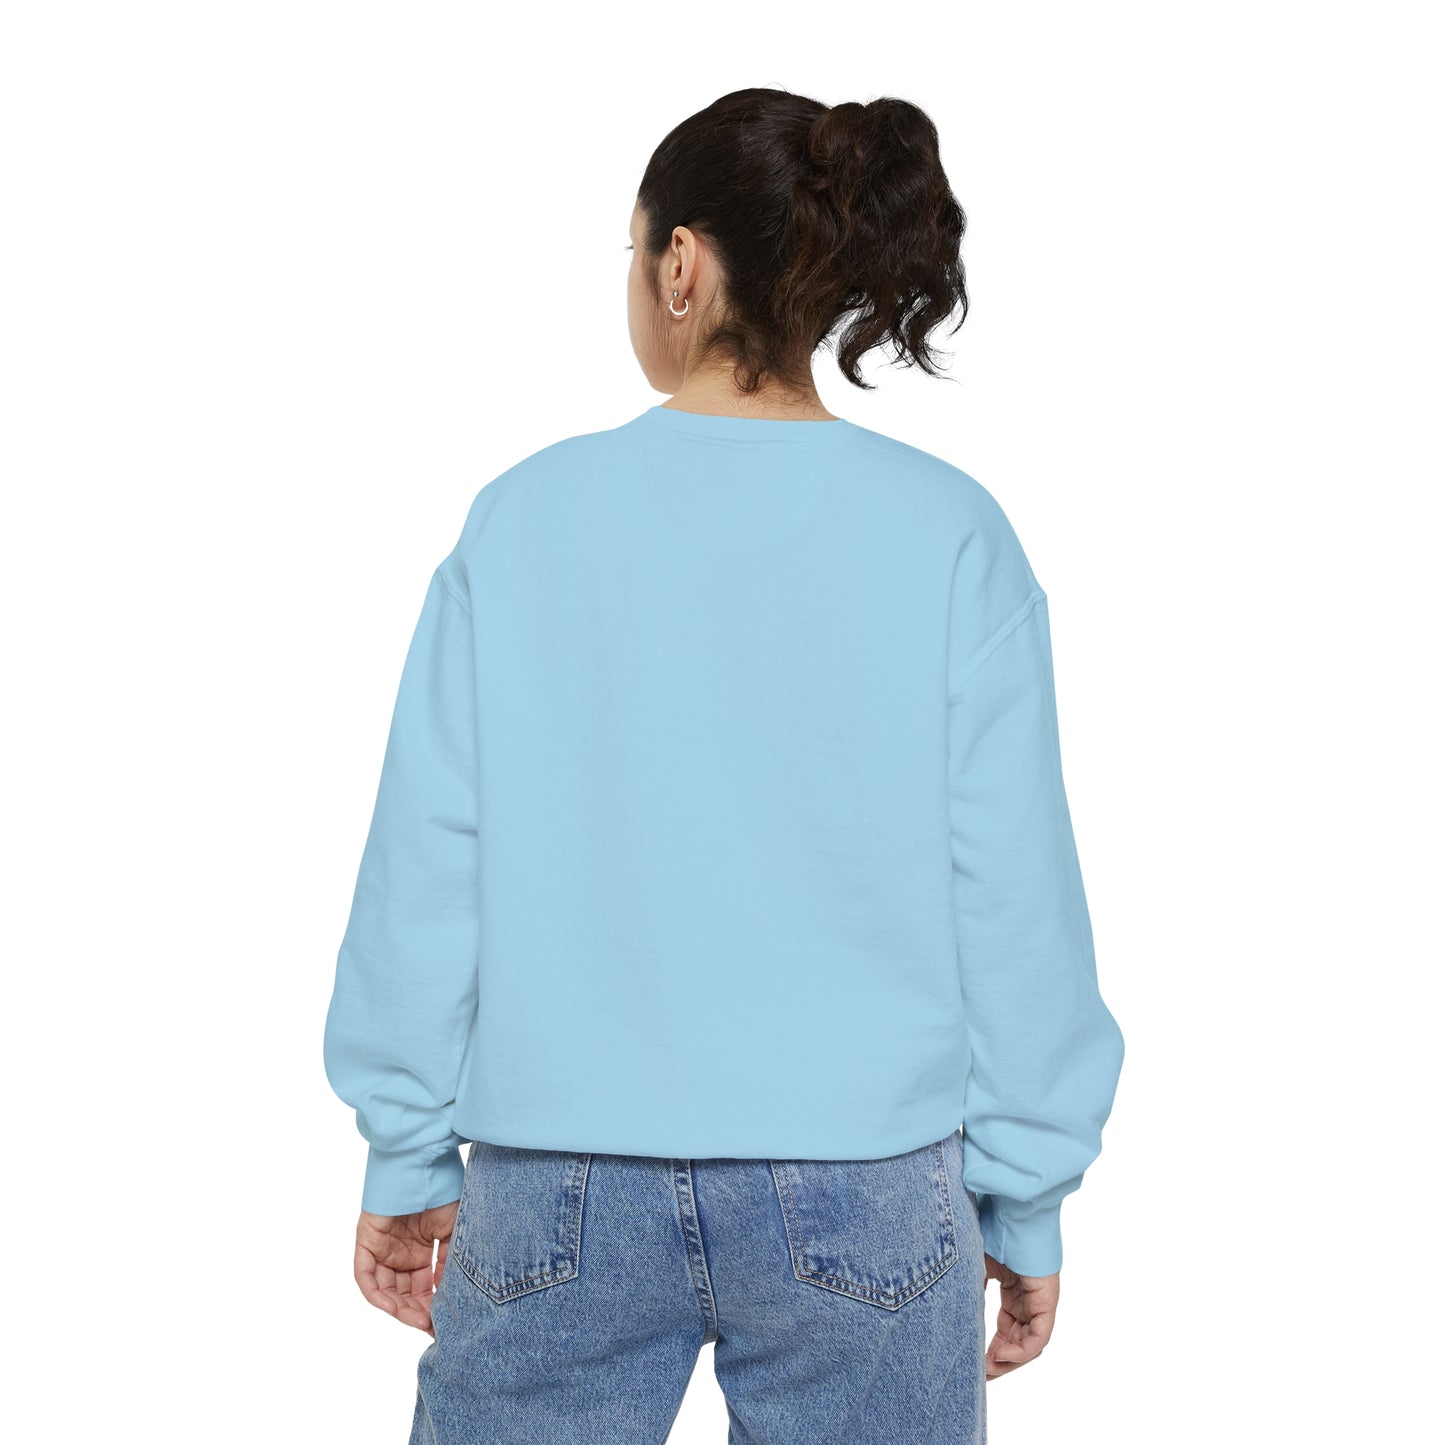 Phonetic Sweatshirt - Blue